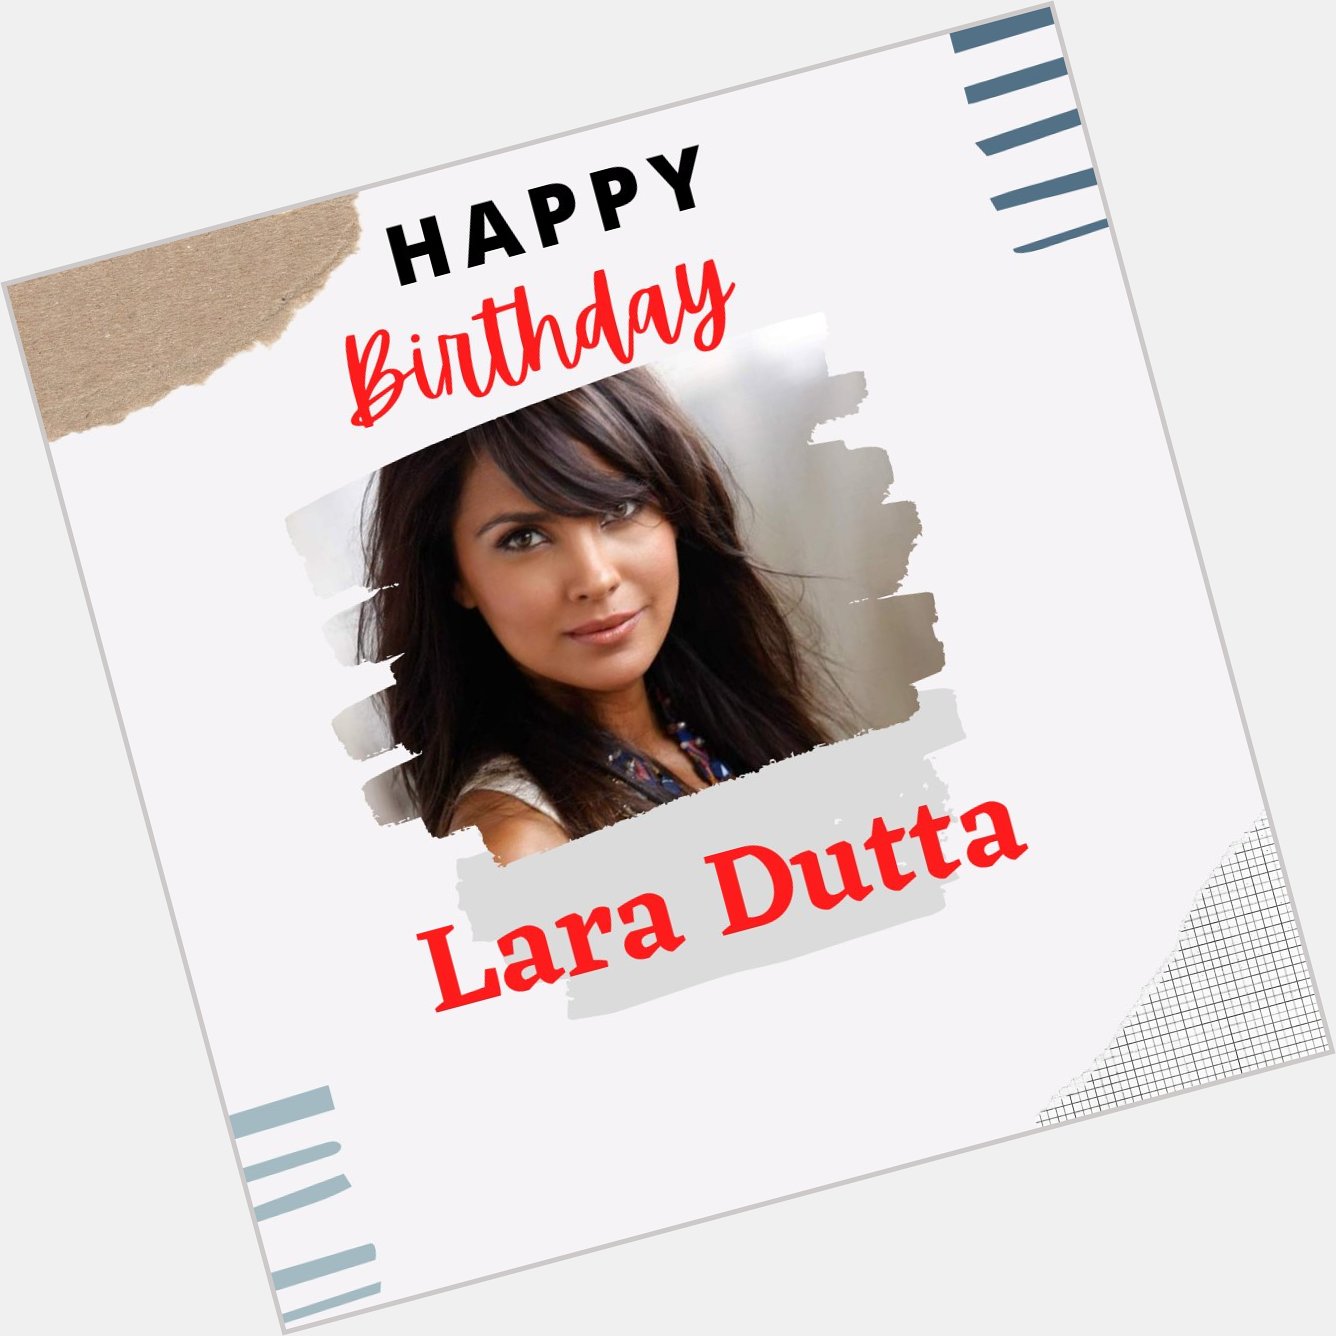 Wishing the beautiful Lara Dutta a very Happy Birthday    